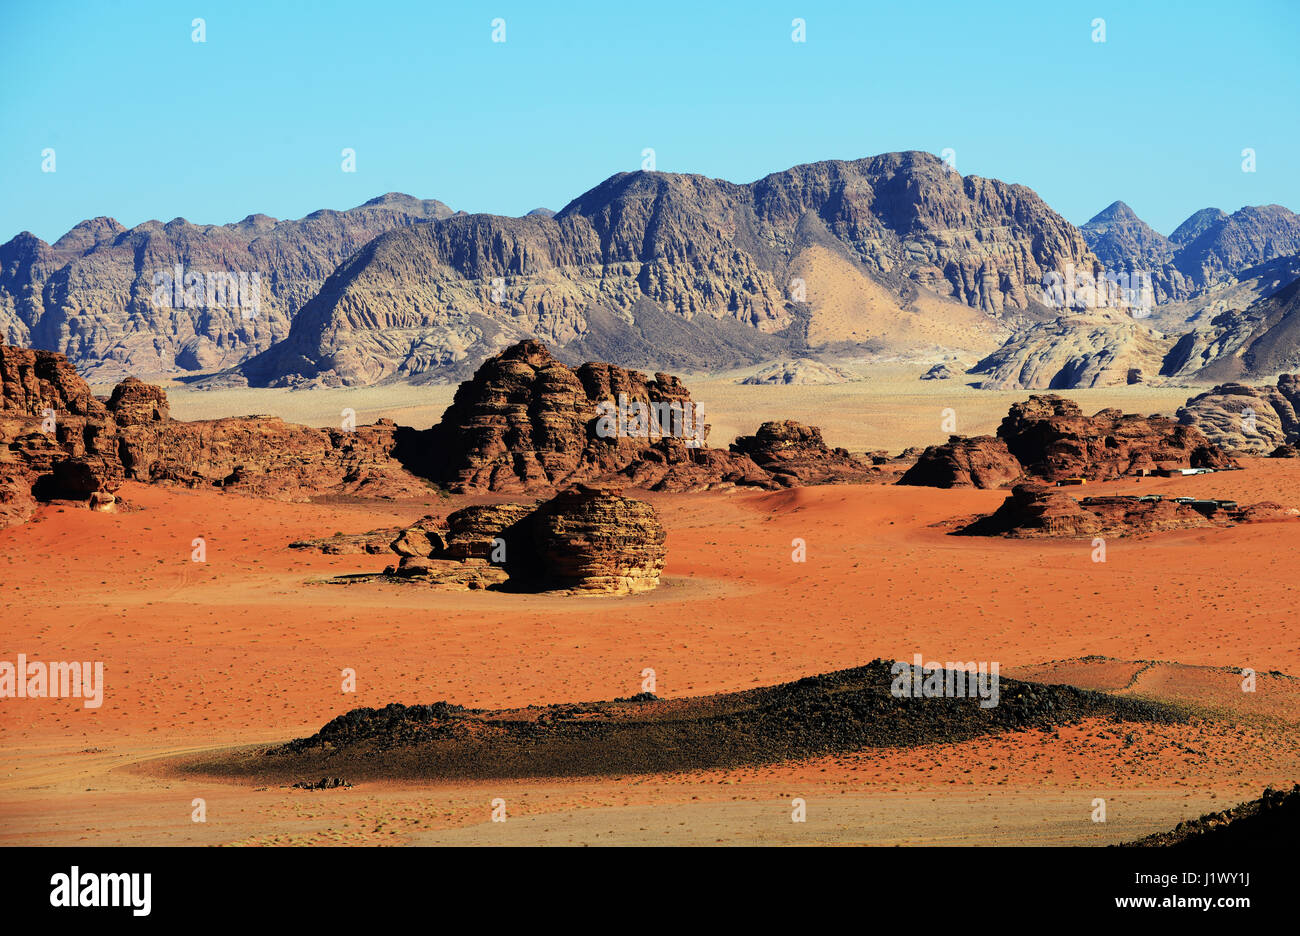 Beautiful desert scenery in Wadi Rum, Jordan. Stock Photo